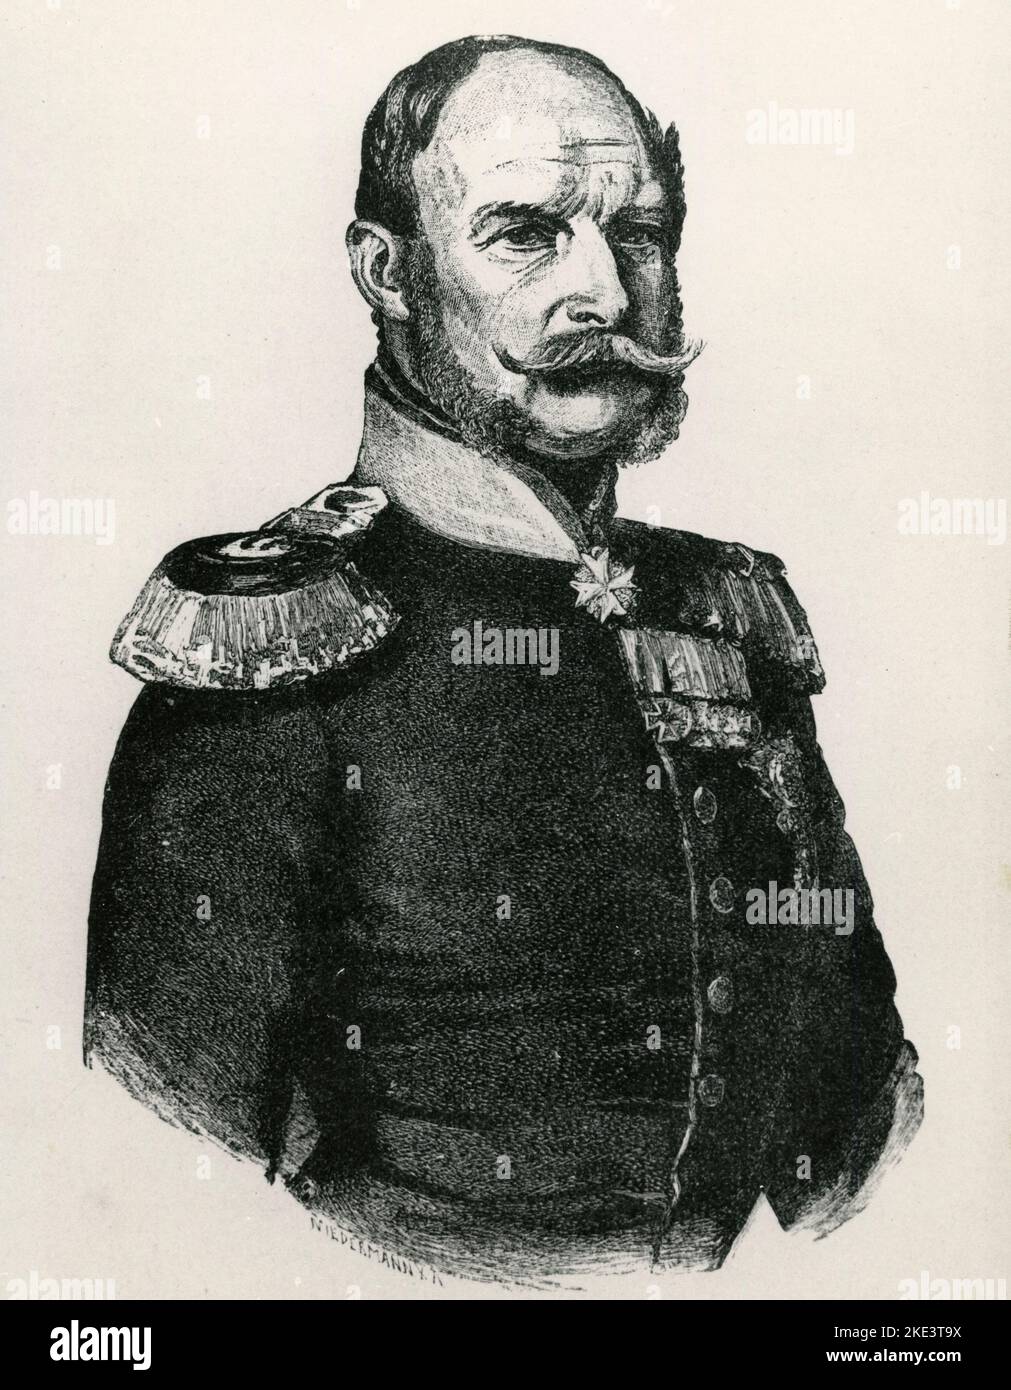 Porträt des deutschen Kaiser Wilhelm I., König von Preußen, Illustration, 1800s Stockfoto